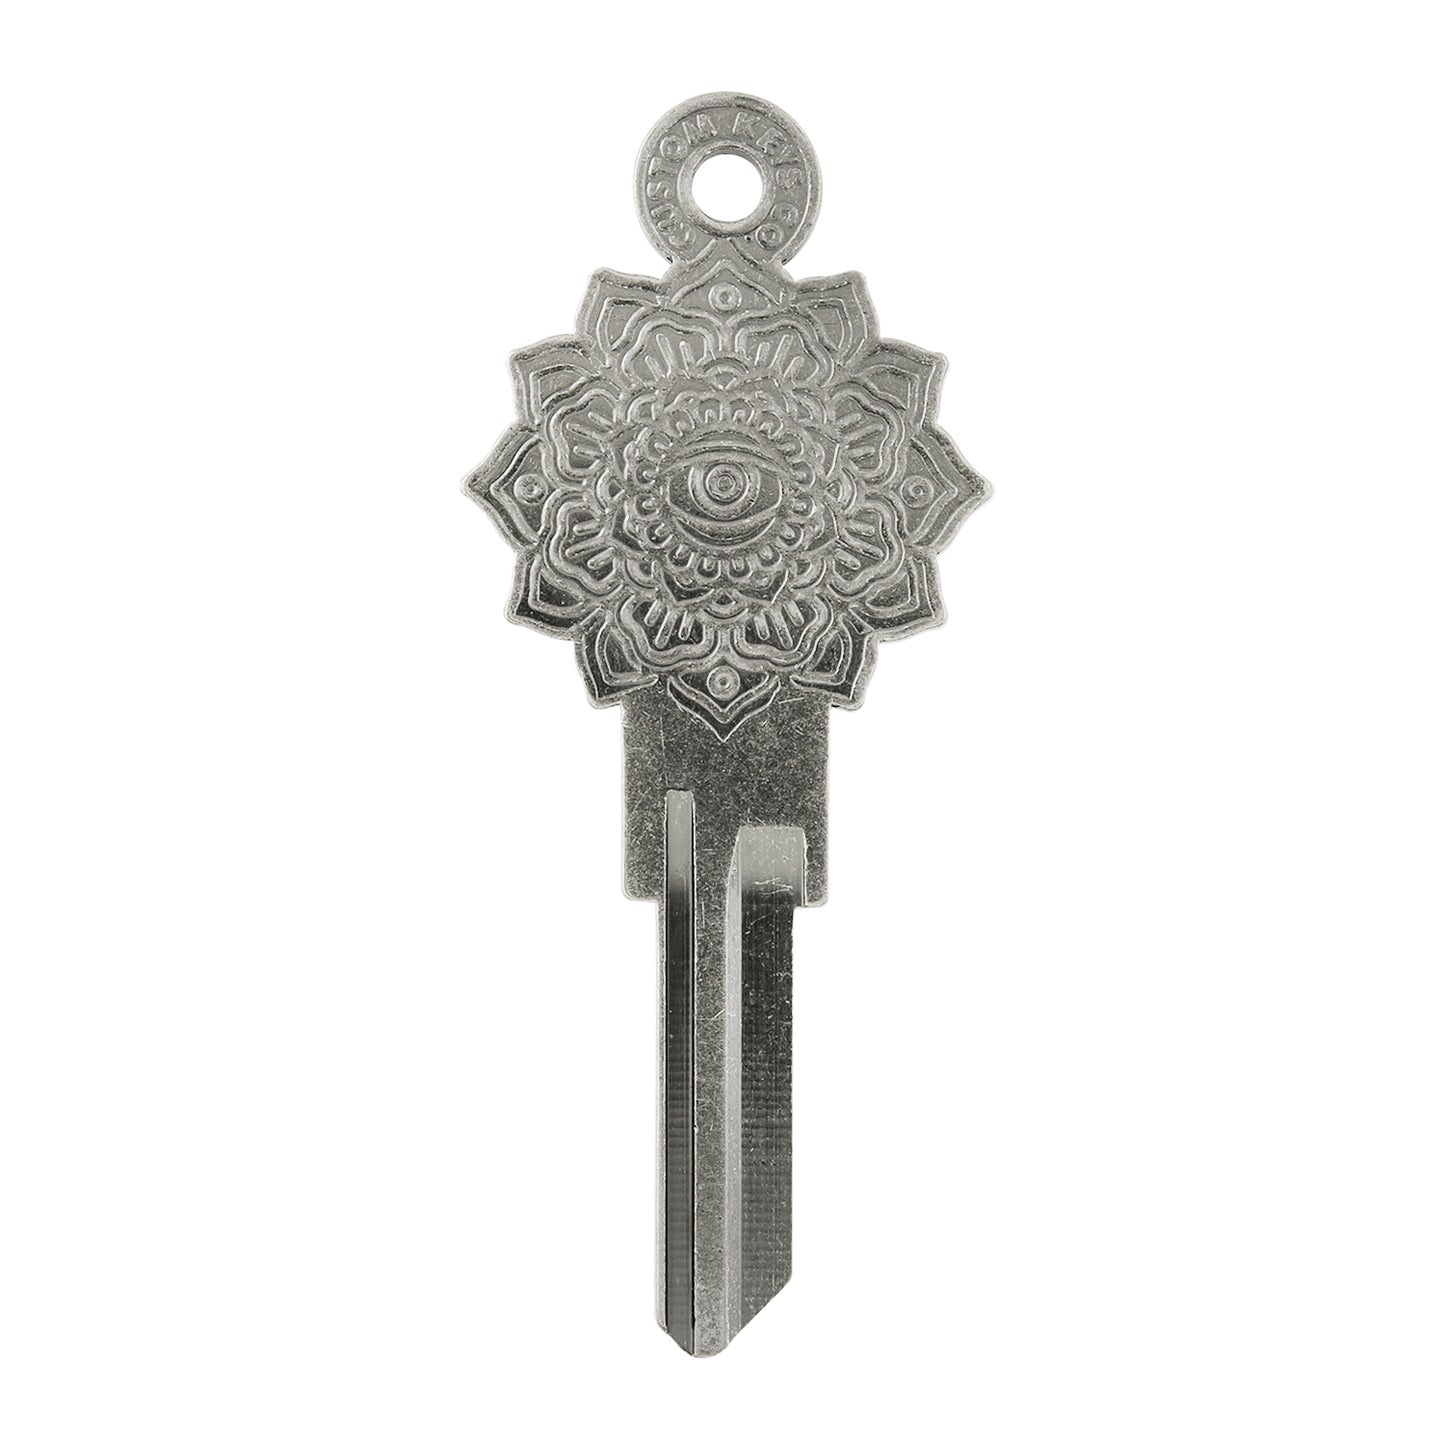 Mandala Key - Silver